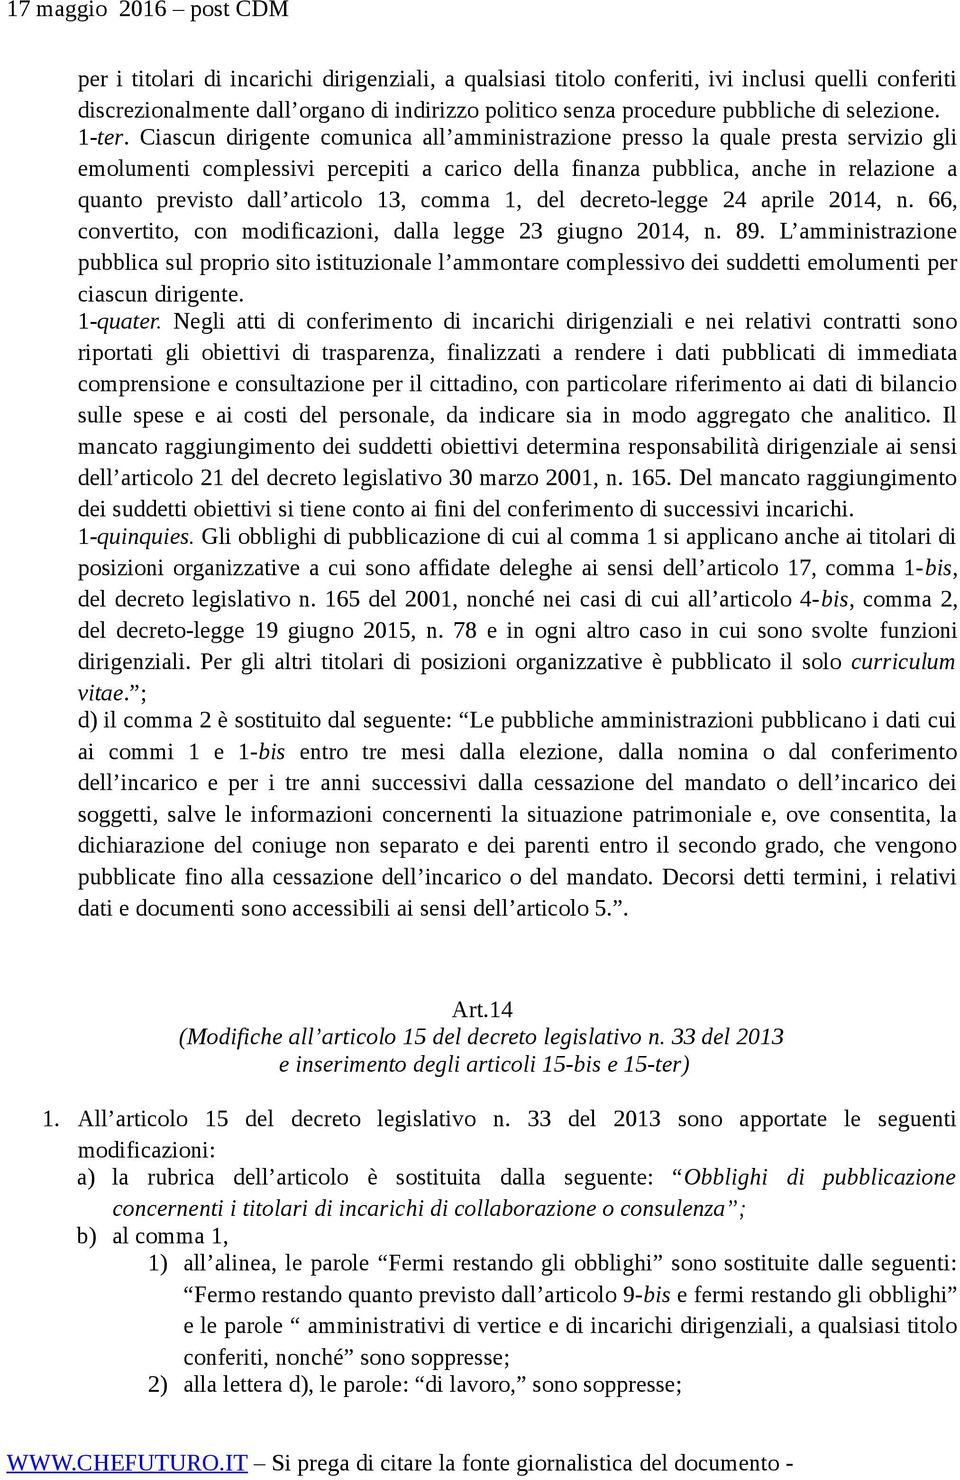 13, comma 1, del decreto-legge 24 aprile 2014, n. 66, convertito, con modificazioni, dalla legge 23 giugno 2014, n. 89.